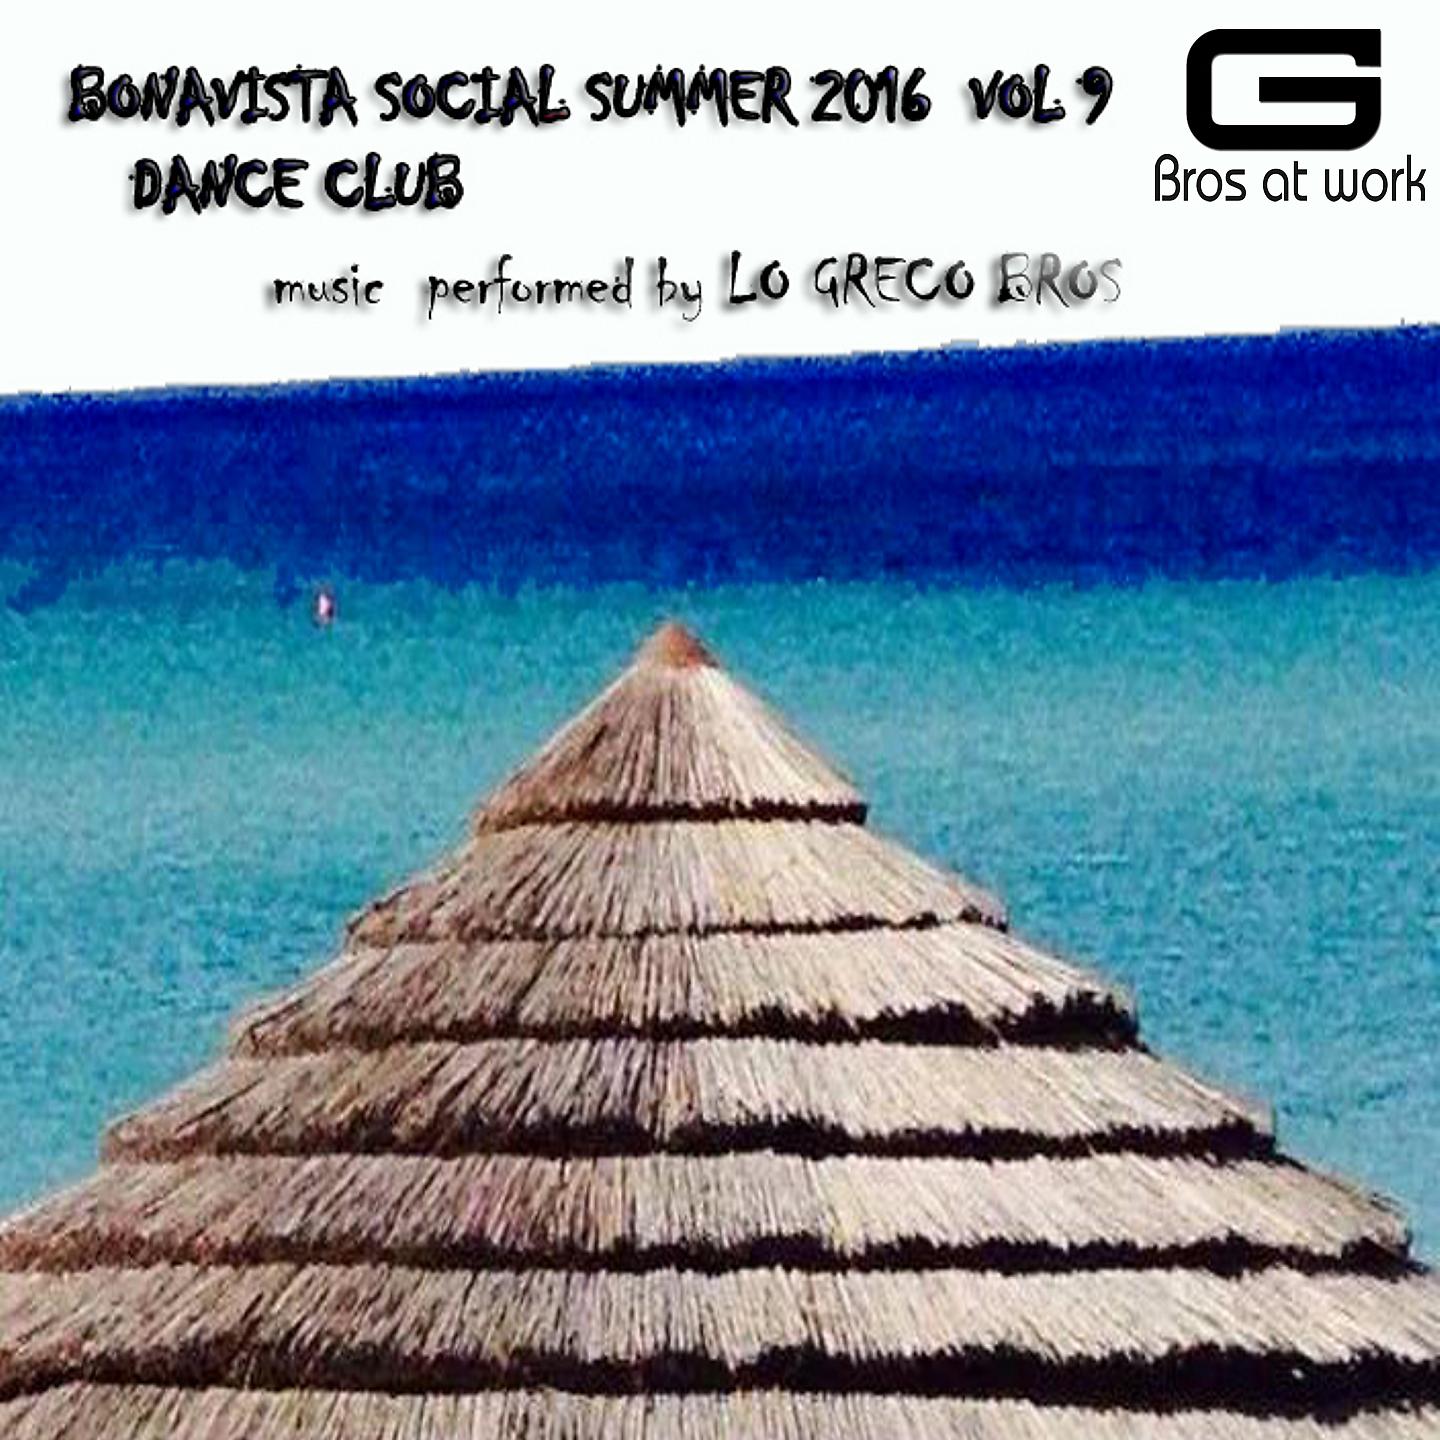 Постер альбома Bonavista Social Summer 2016 Dance Club, Vol. 9